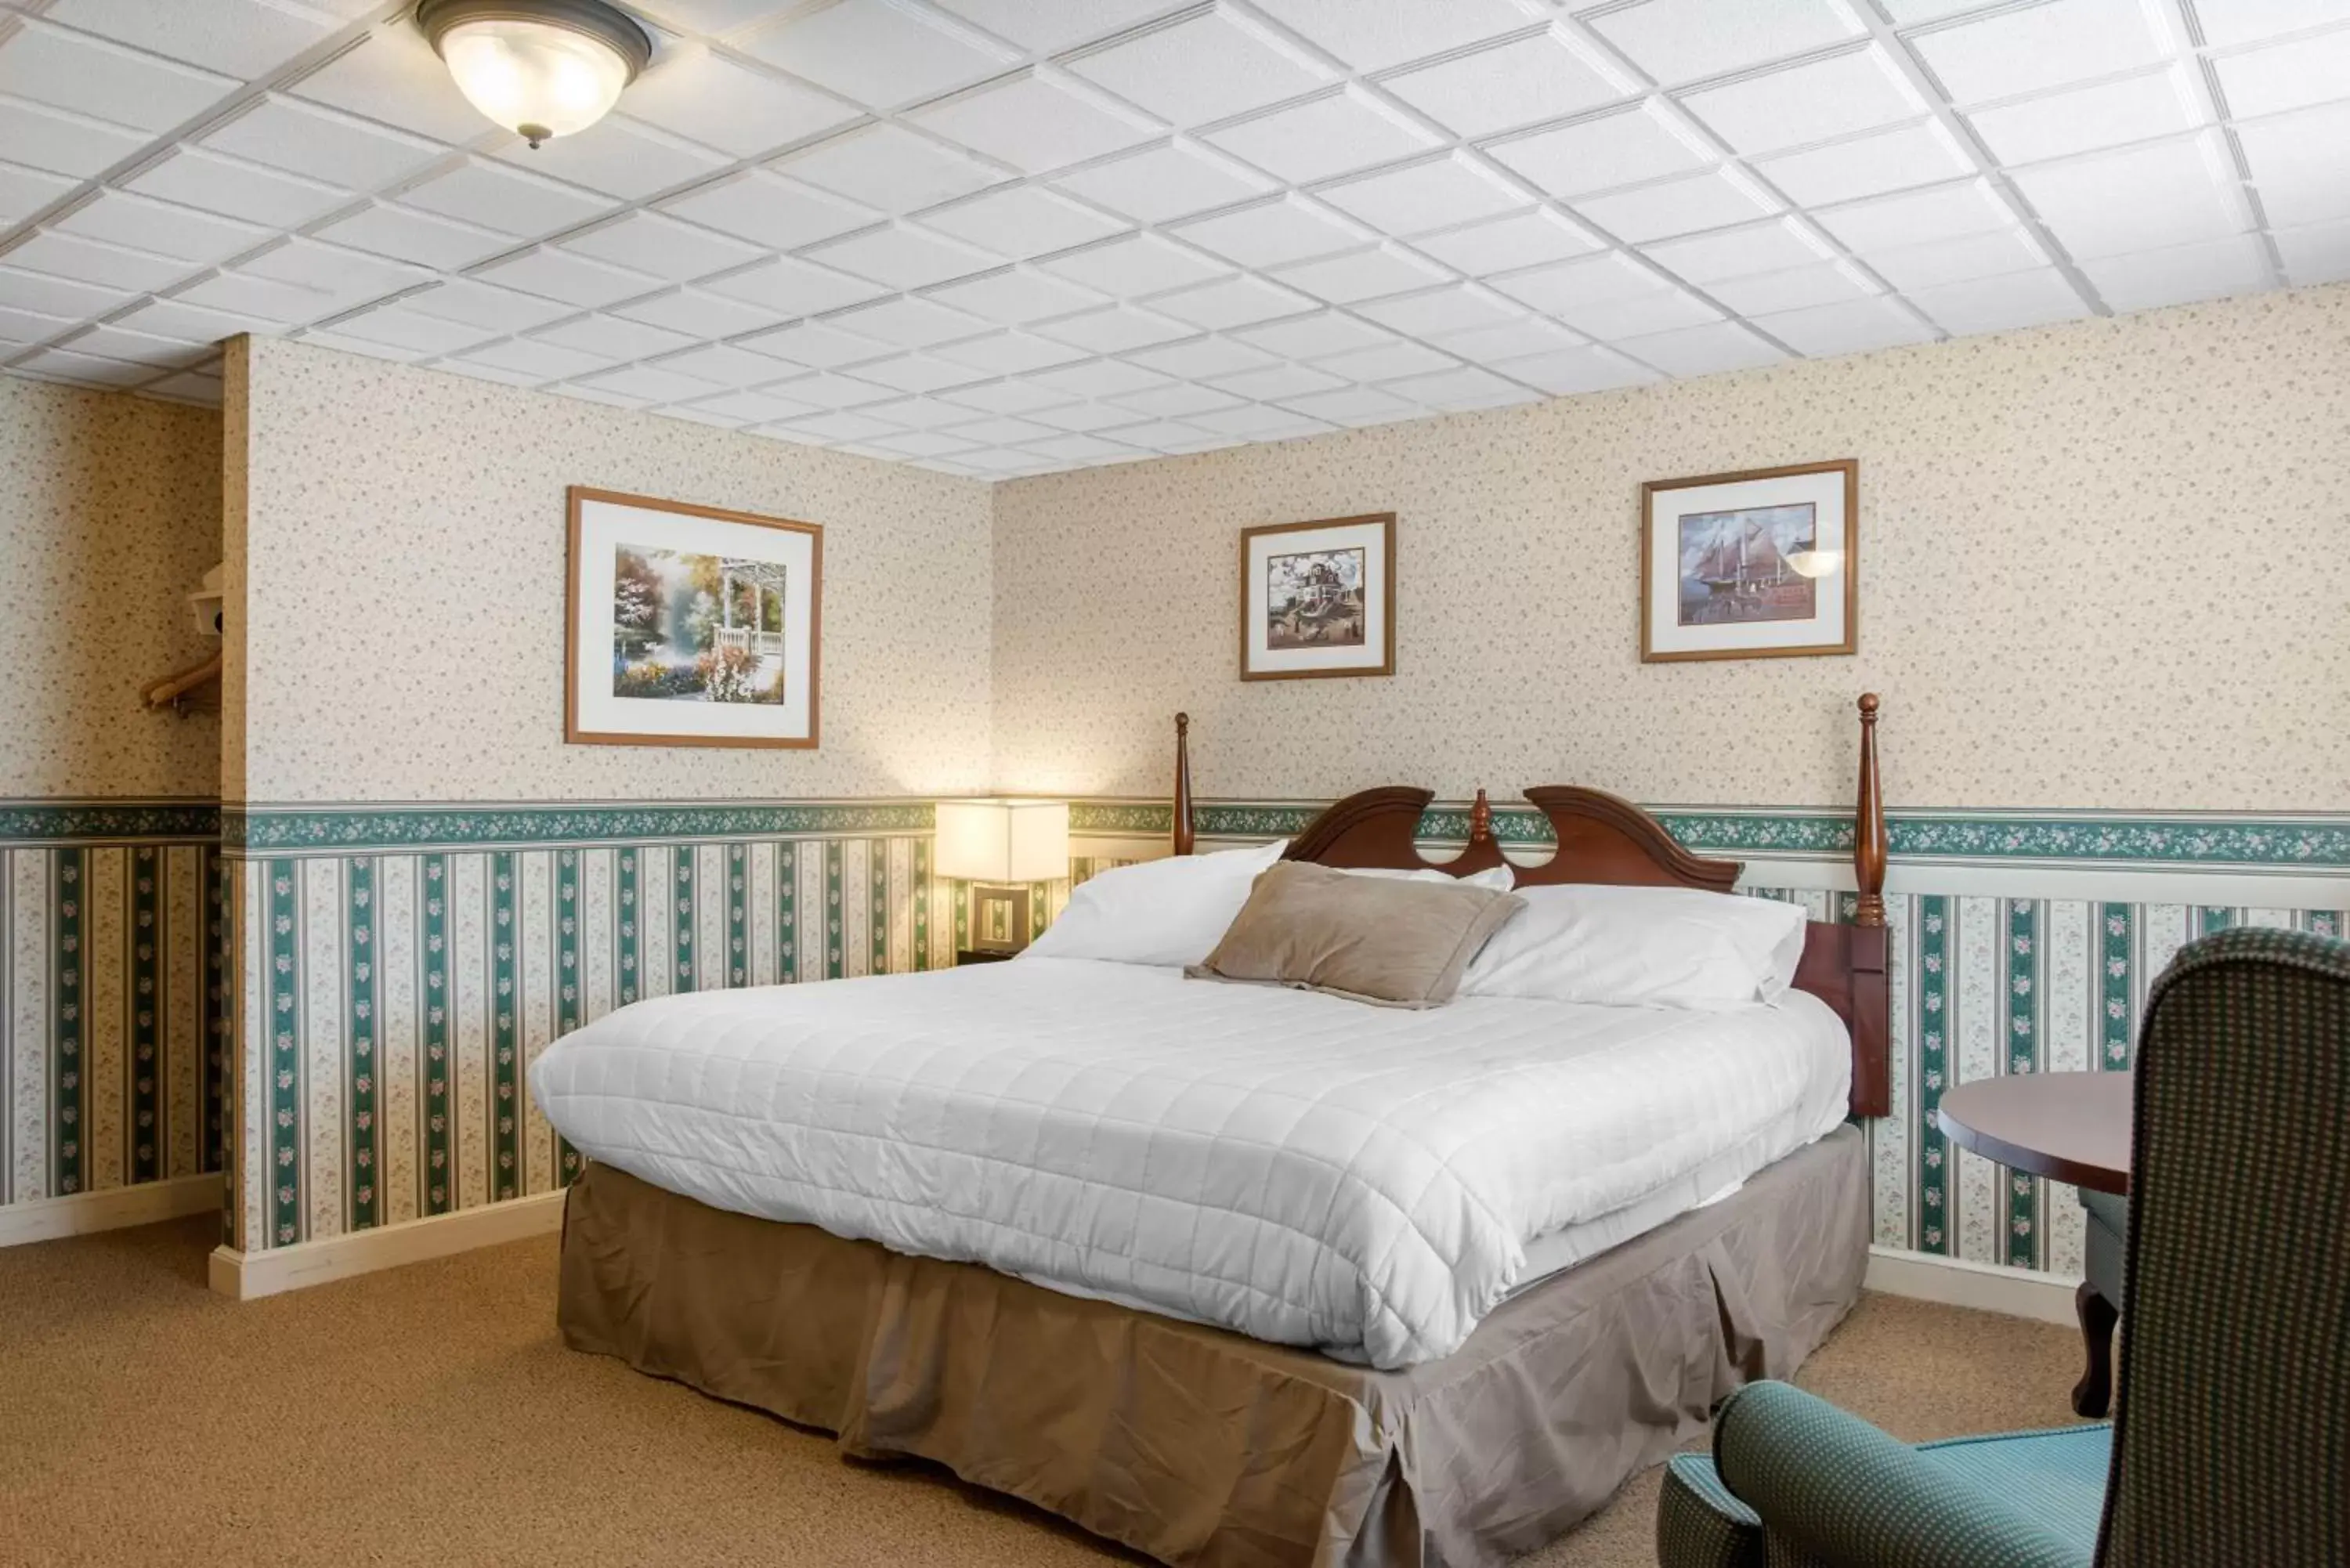 Bed in Coachman Inn